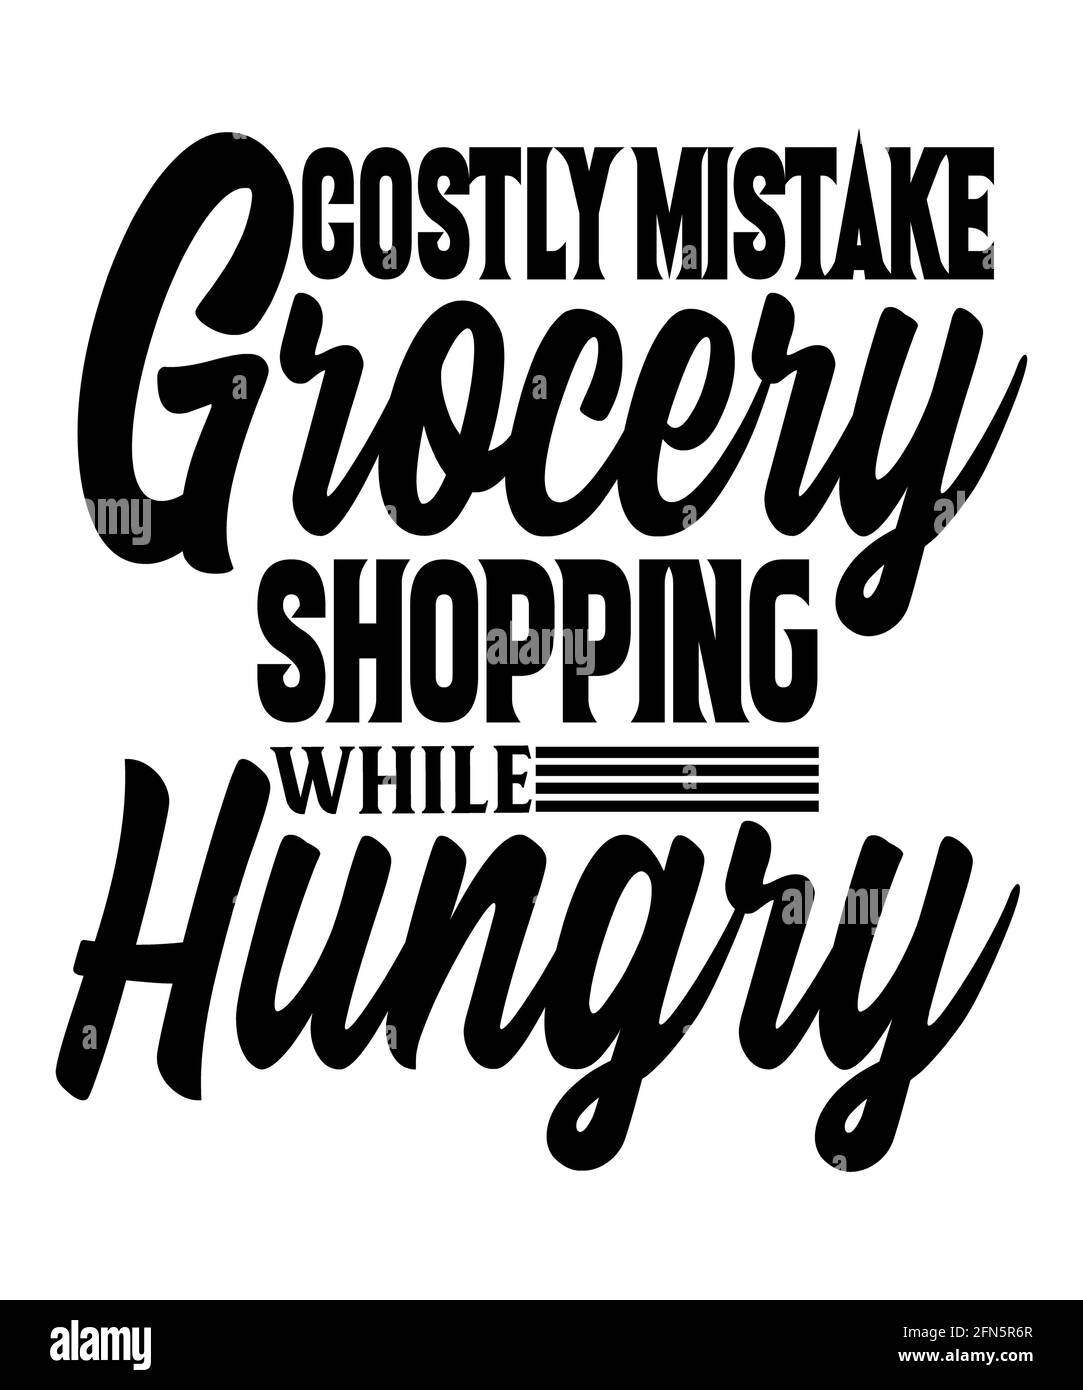 Kostspielige Fehler Lebensmitteleinkauf während hungriger Leben Zitat, das zu wahr ist. Tolle Erinnerung, vor dem Kauf von Lebensmitteln oder Lebensmittel einkaufen im Retro-Stil zu essen. Stockfoto